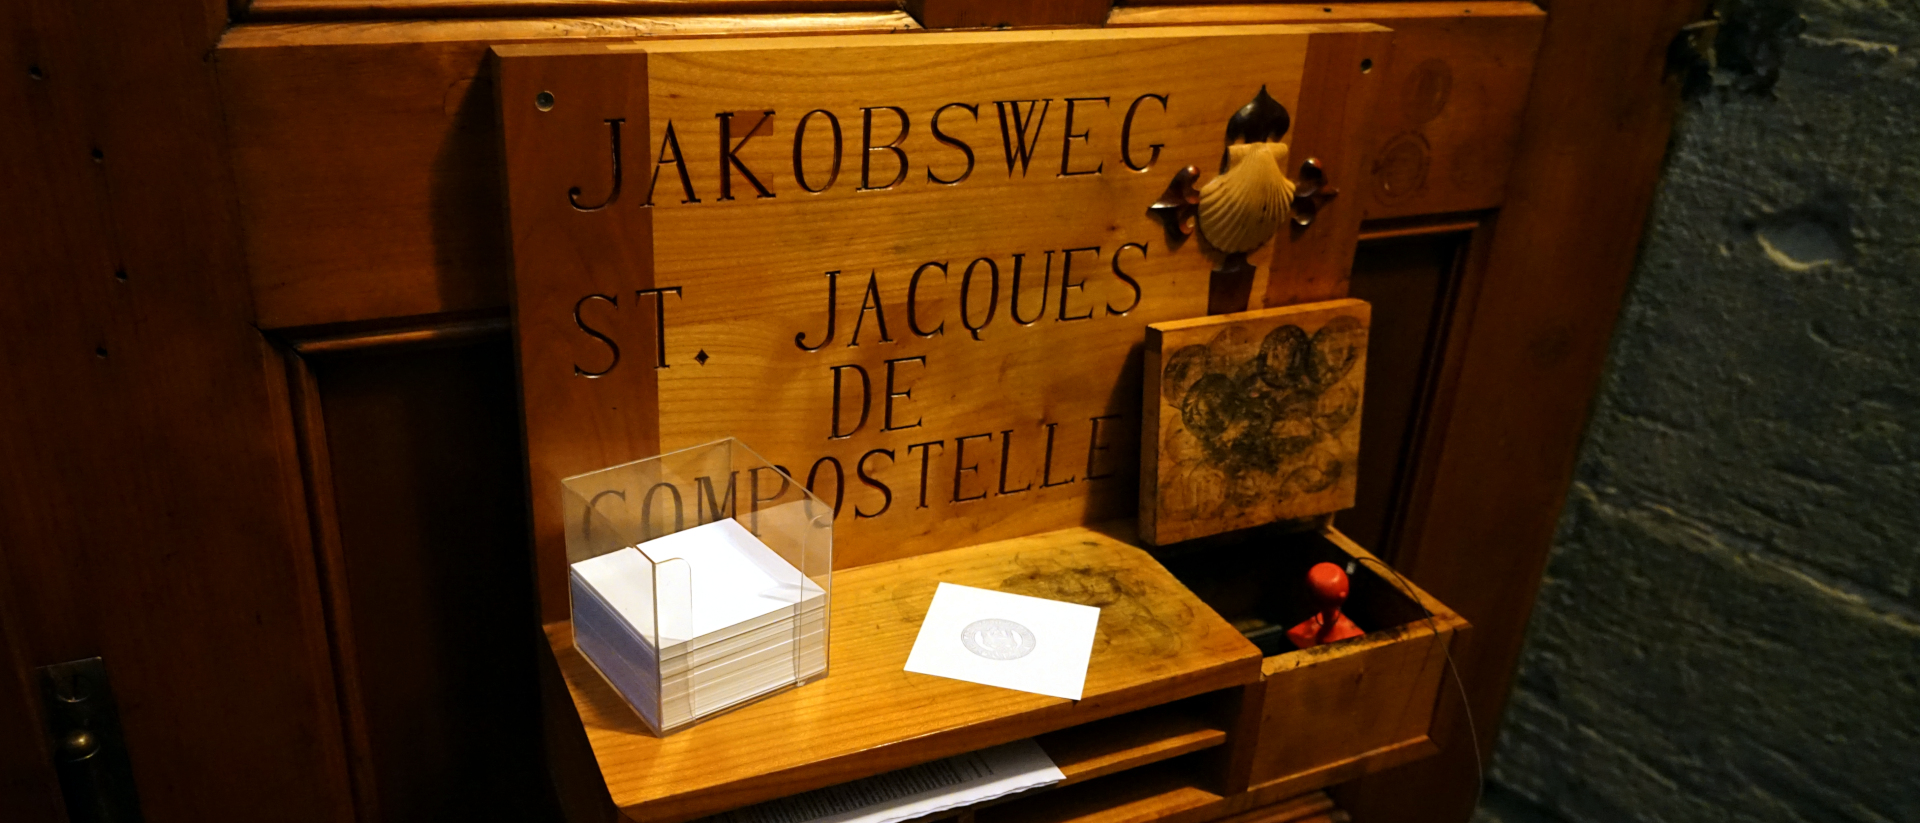 Jakobsweg-Stempelstelle in der Kathedrale Freiburg